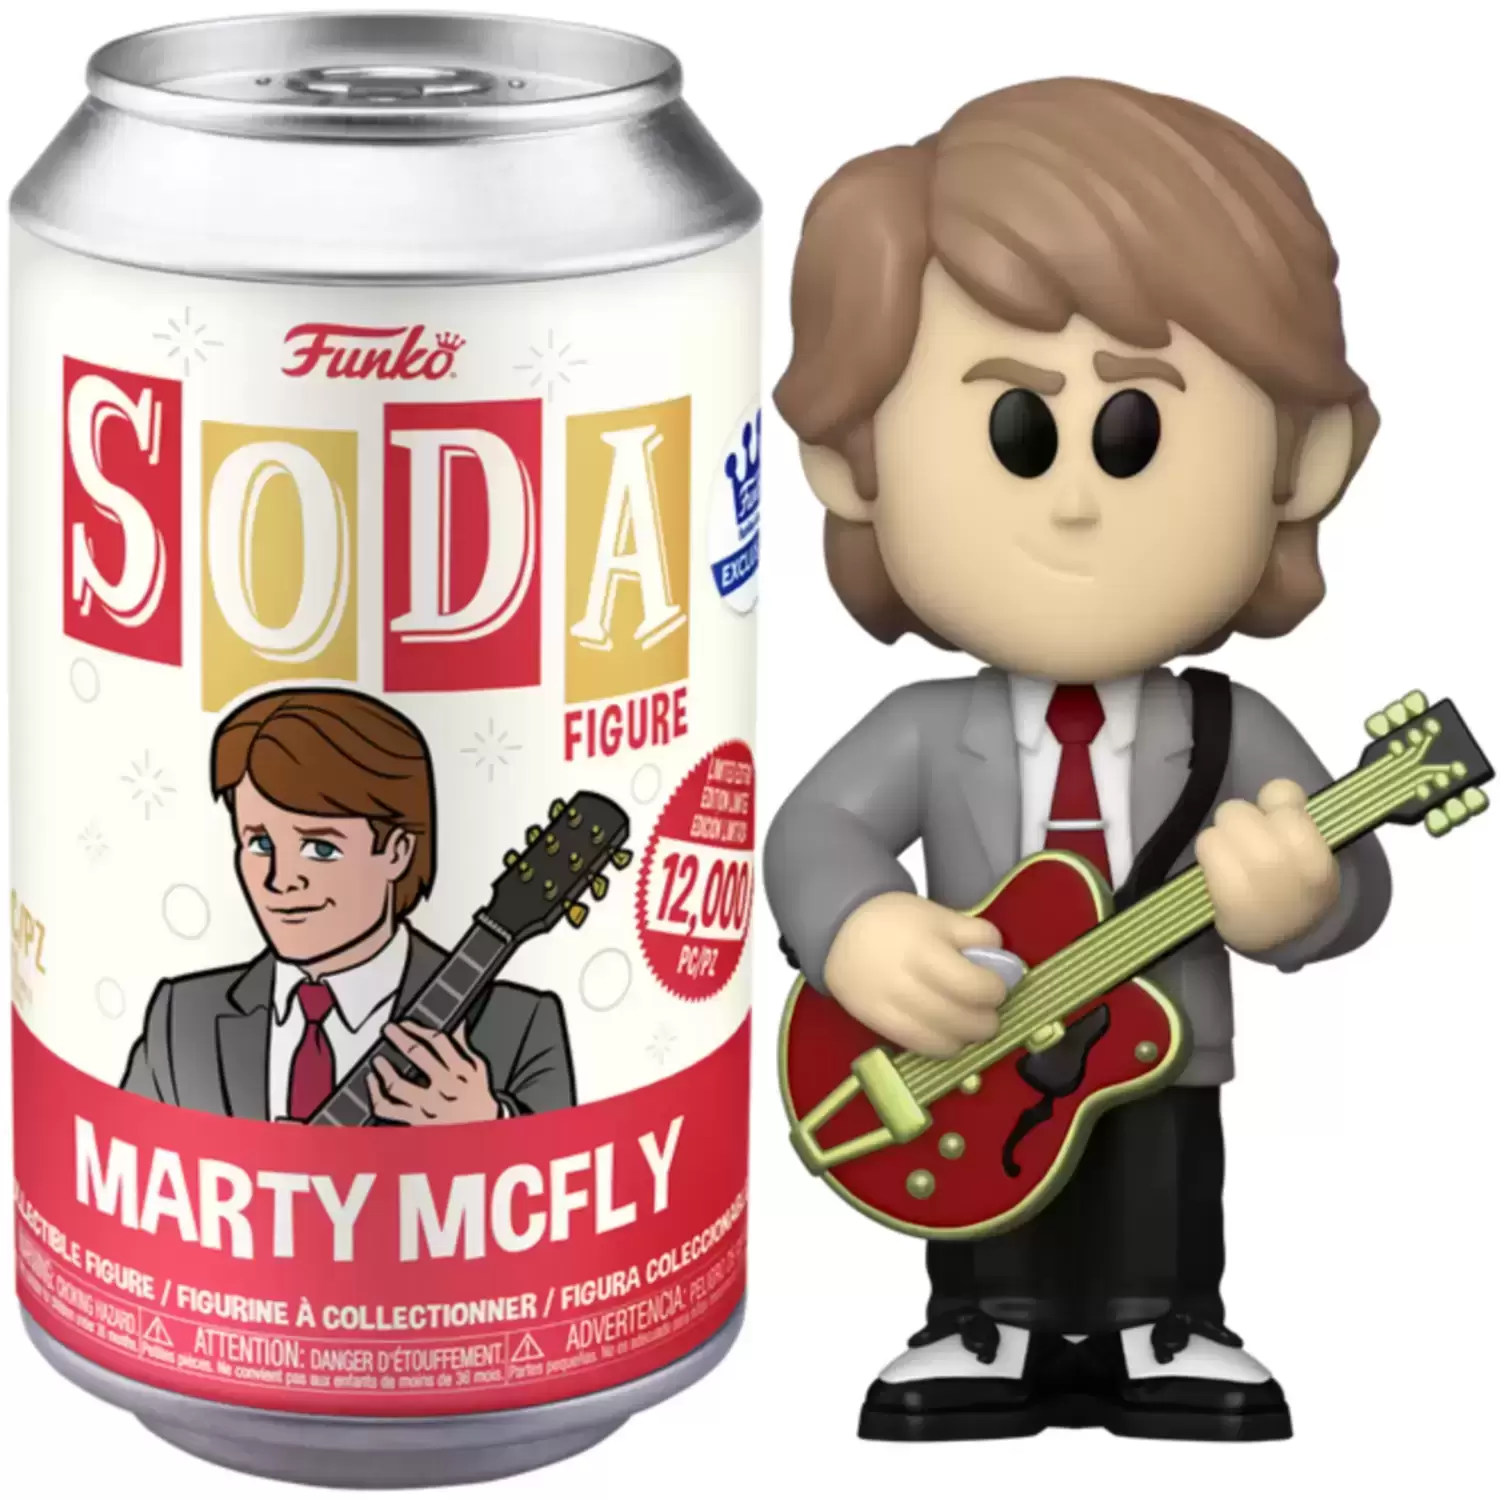 Vinyl Soda! - Back to The Future - Marty McFly